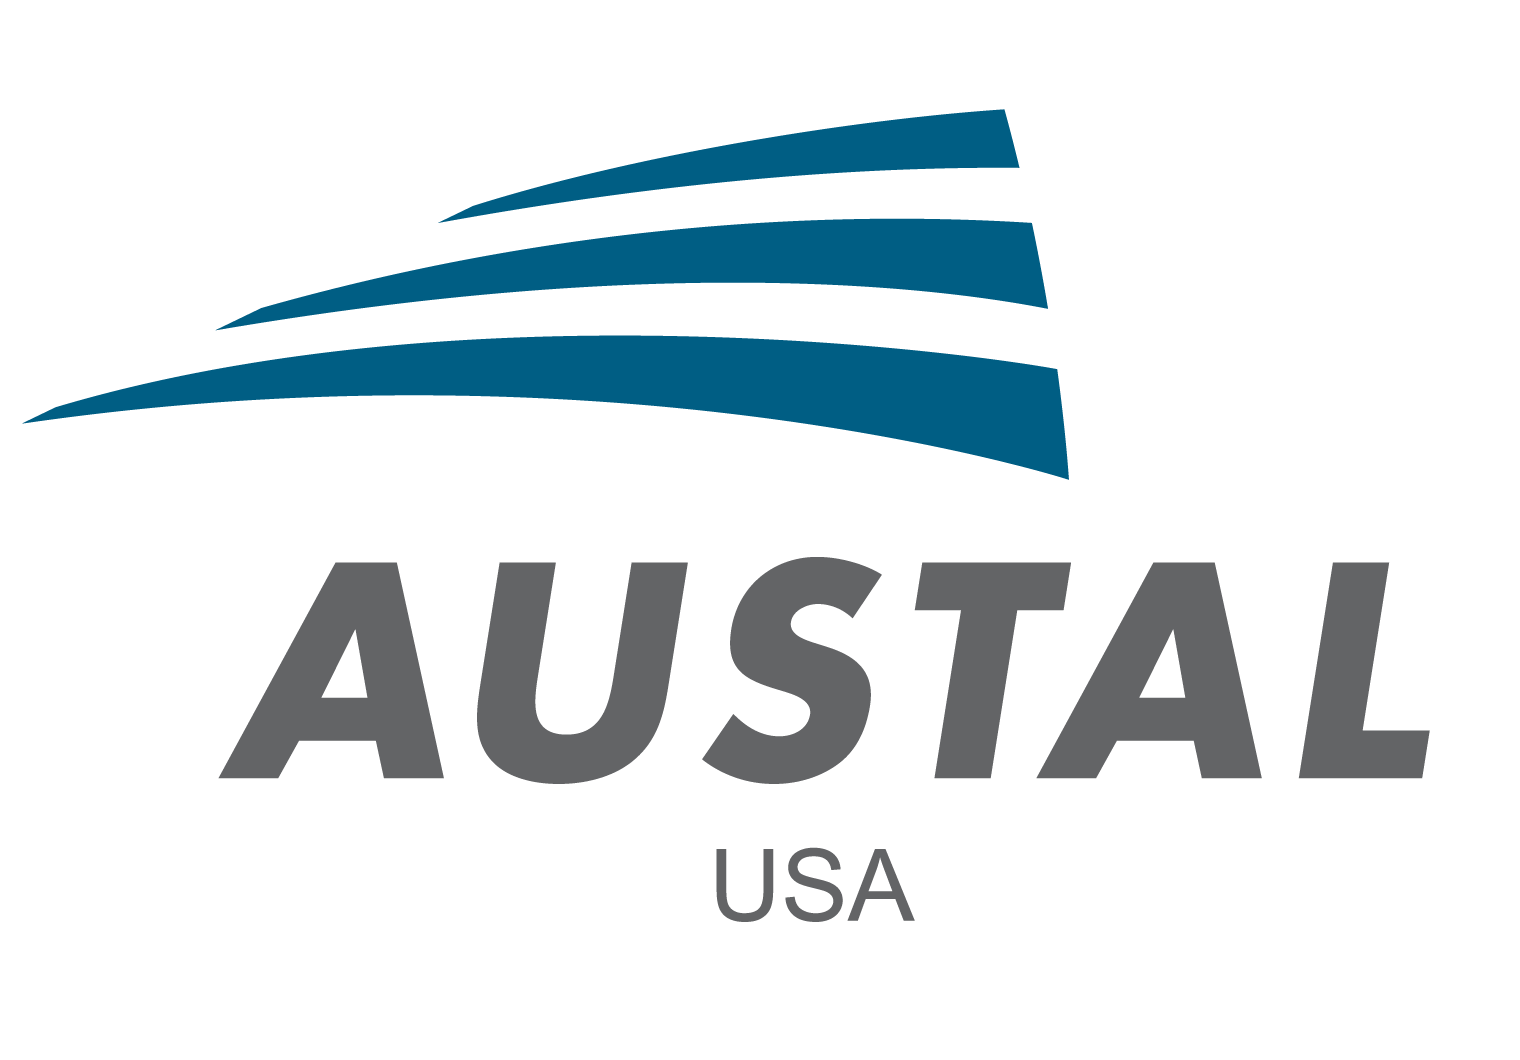 Austal USA establish